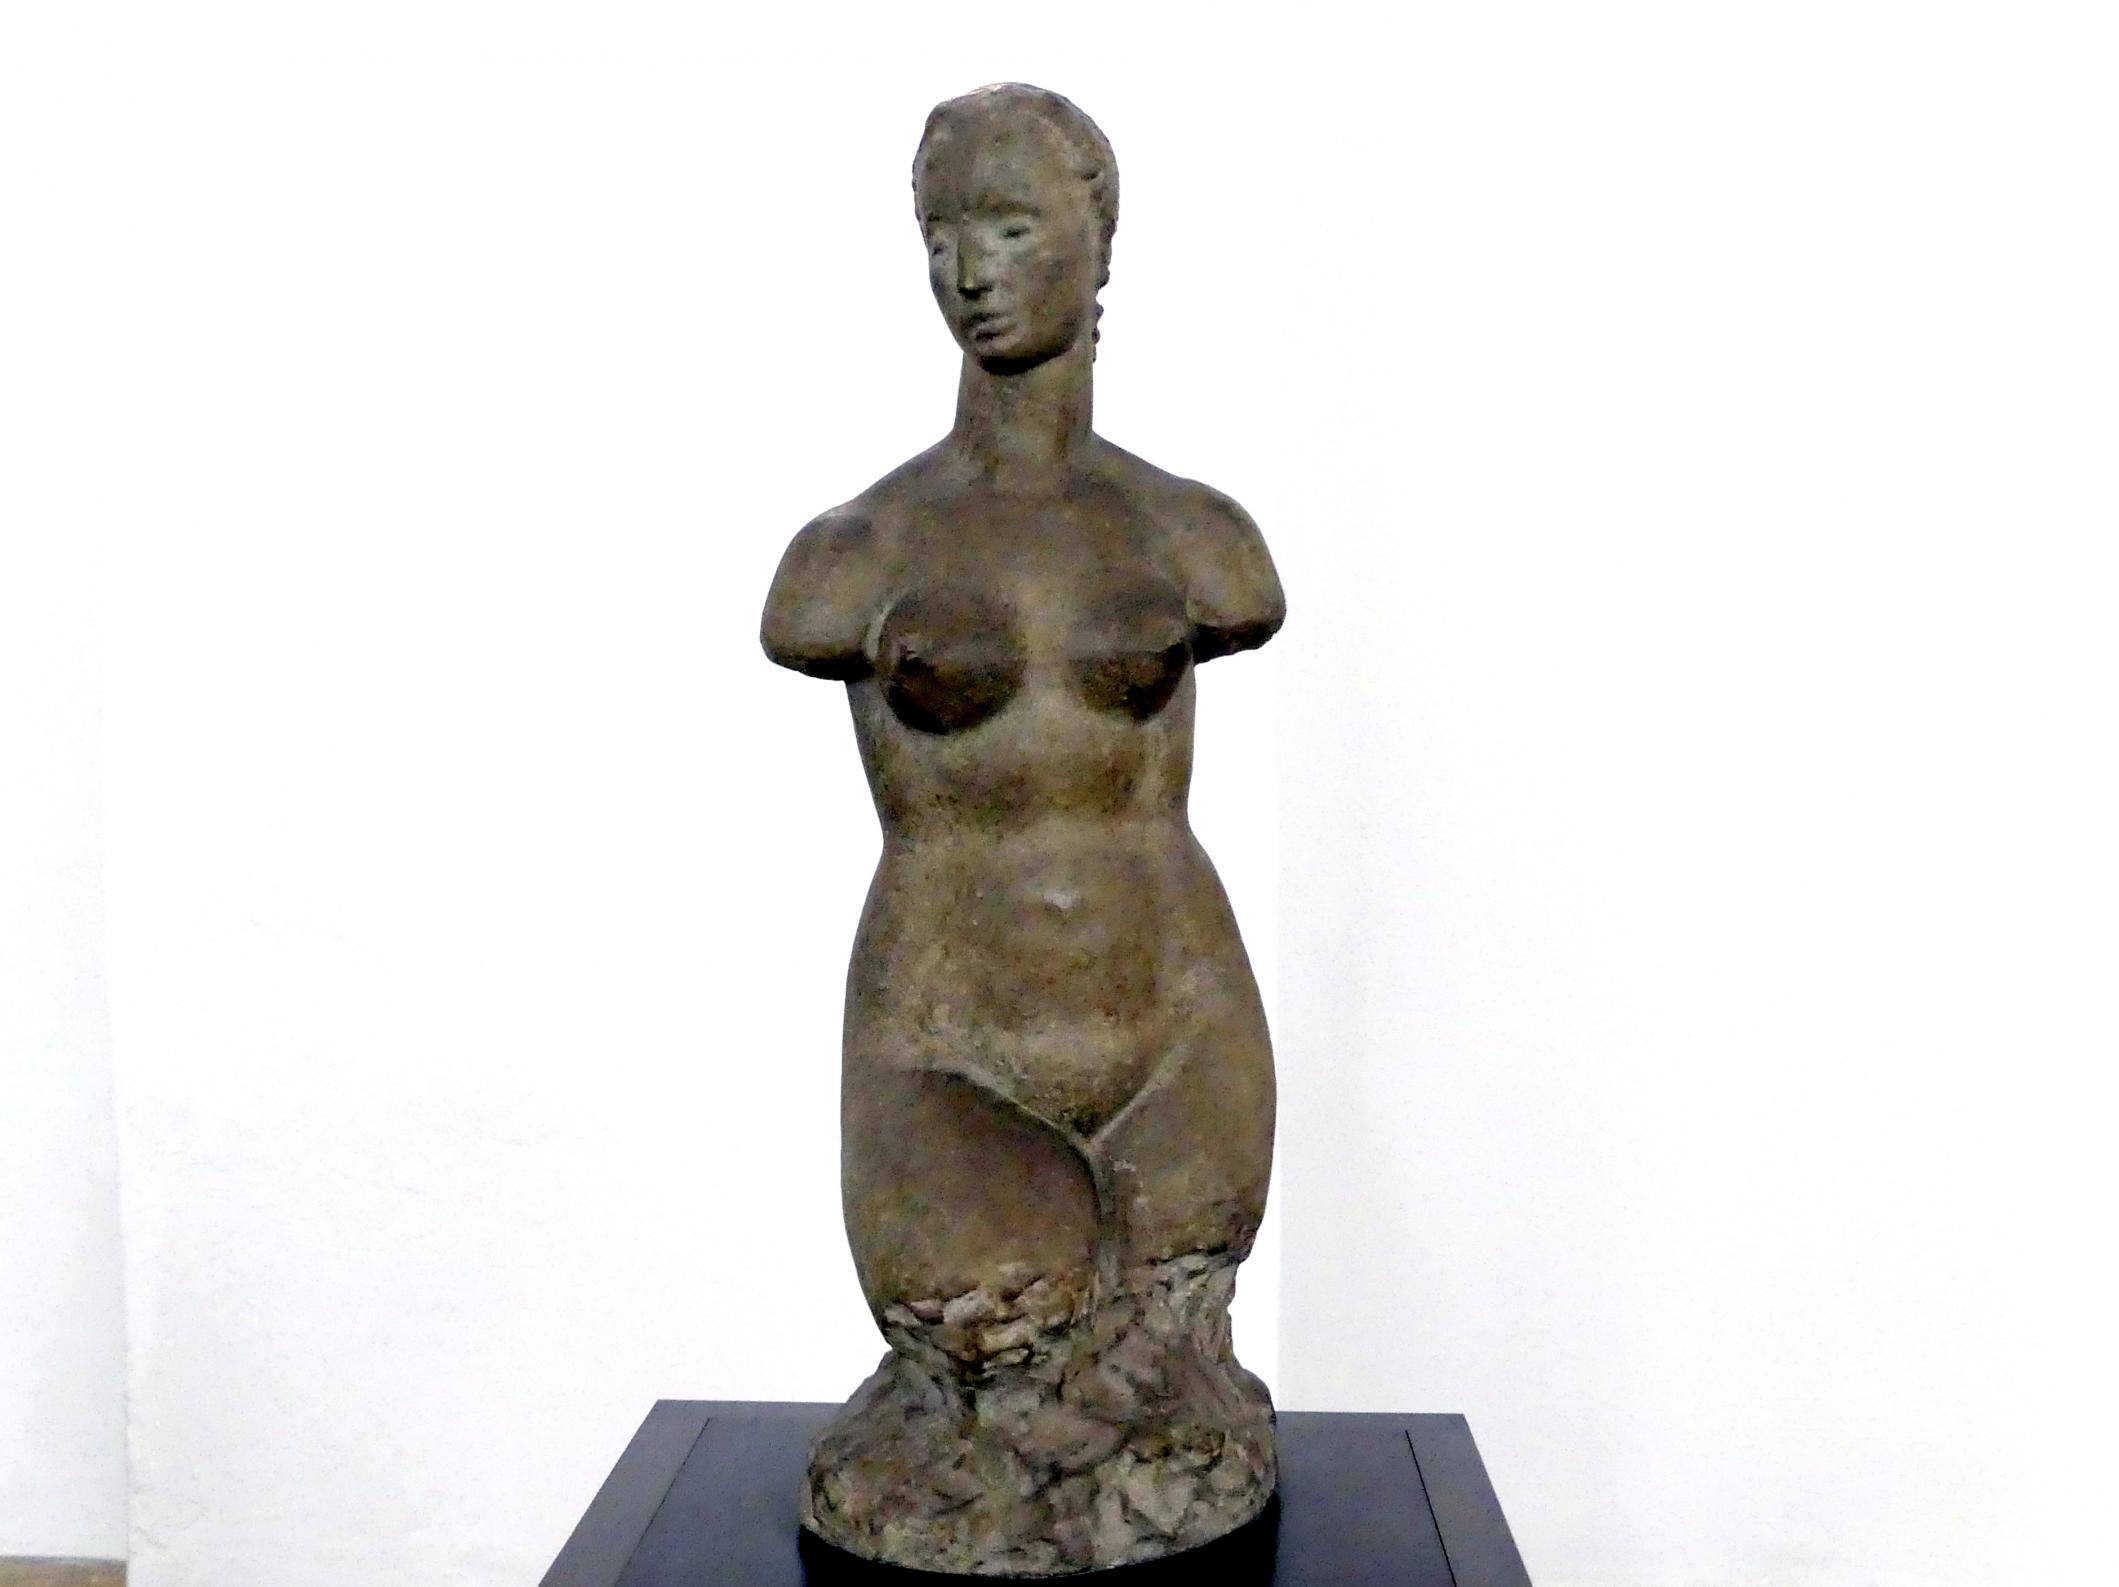 Wilhelm Lehmbruck (1909–1918), Kleiner weiblicher Torso - sogenannter "Hagener Torso", Dresden, Albertinum, Galerie Neue Meister, Erdgeschoss, Skulpturenhalle, 1910–1911